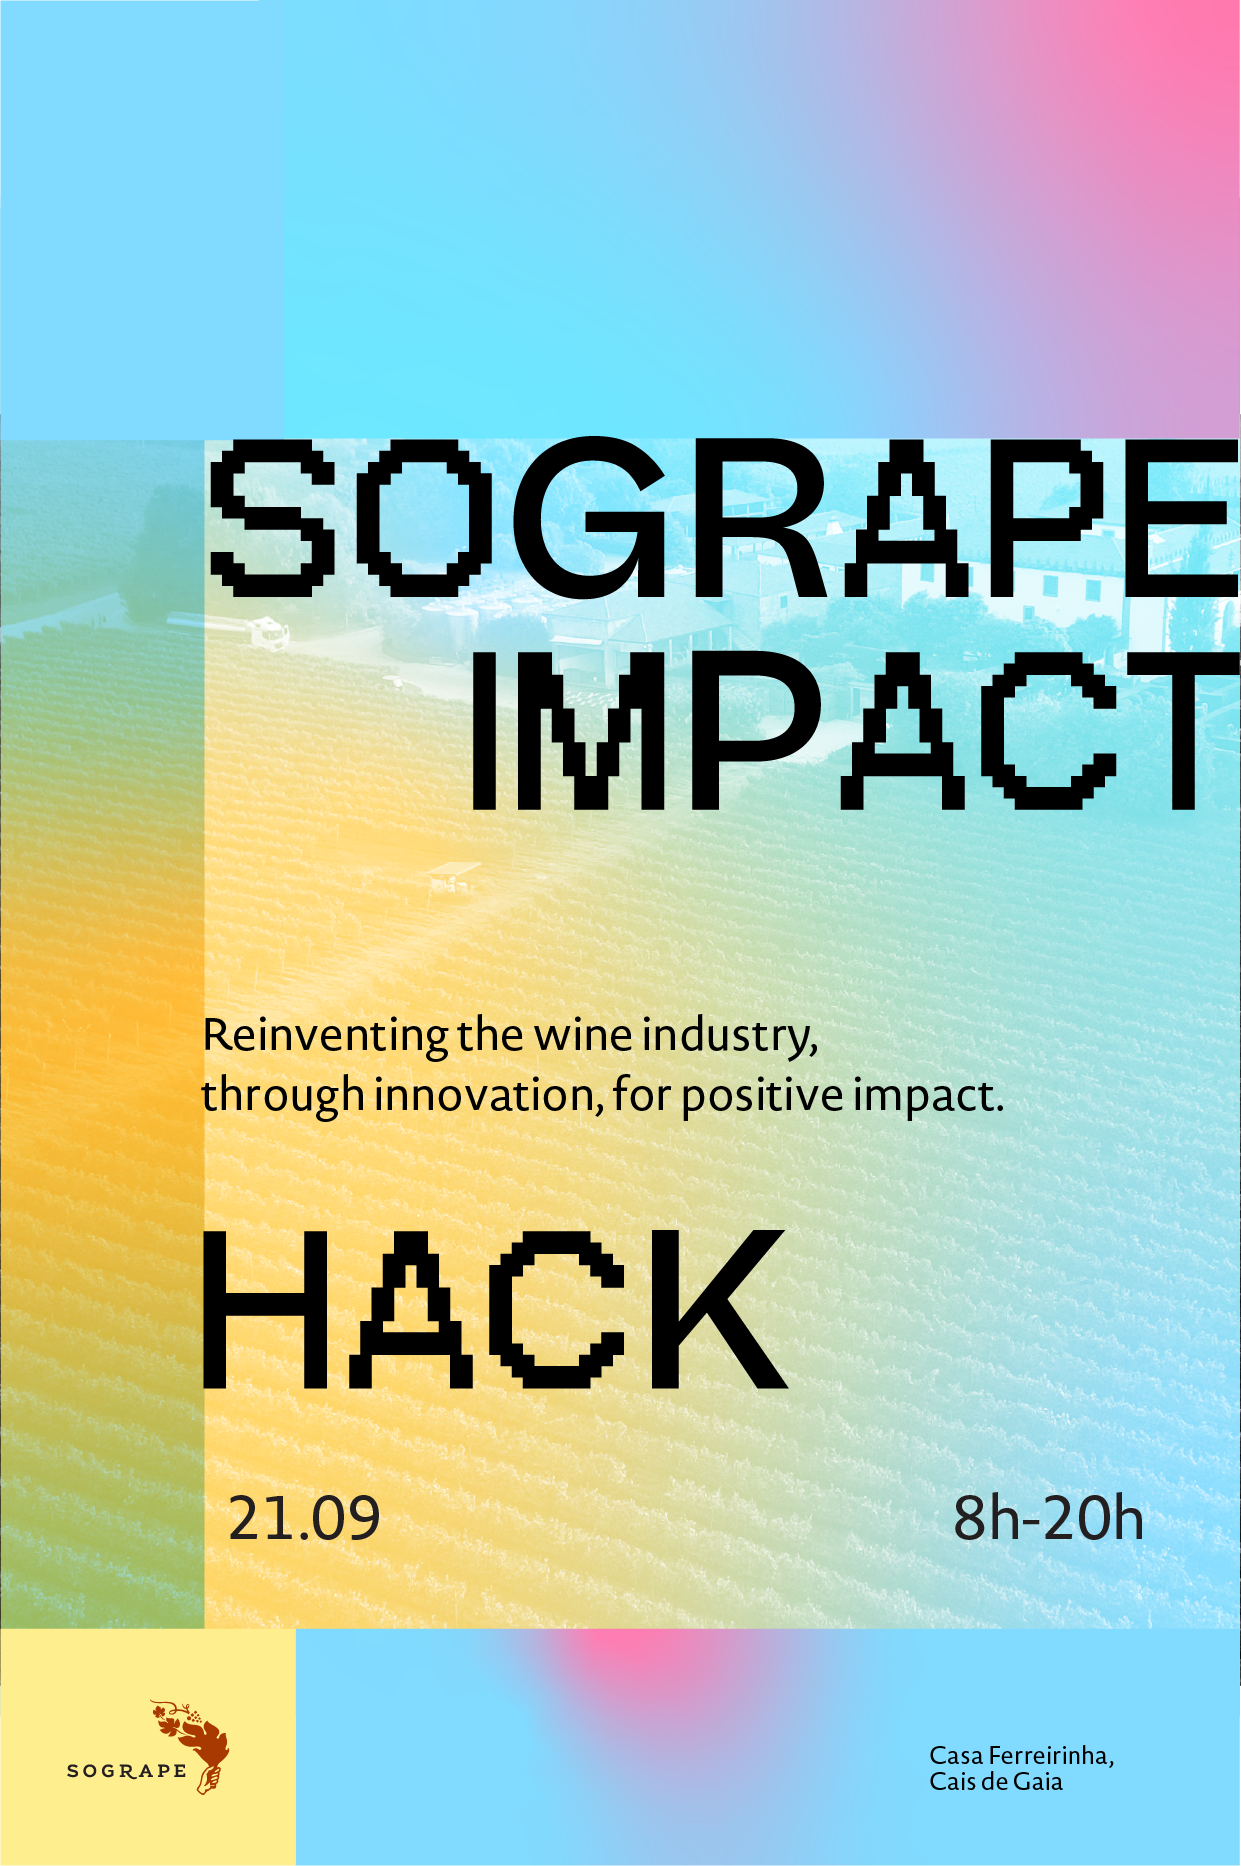 Sogrape impact hack